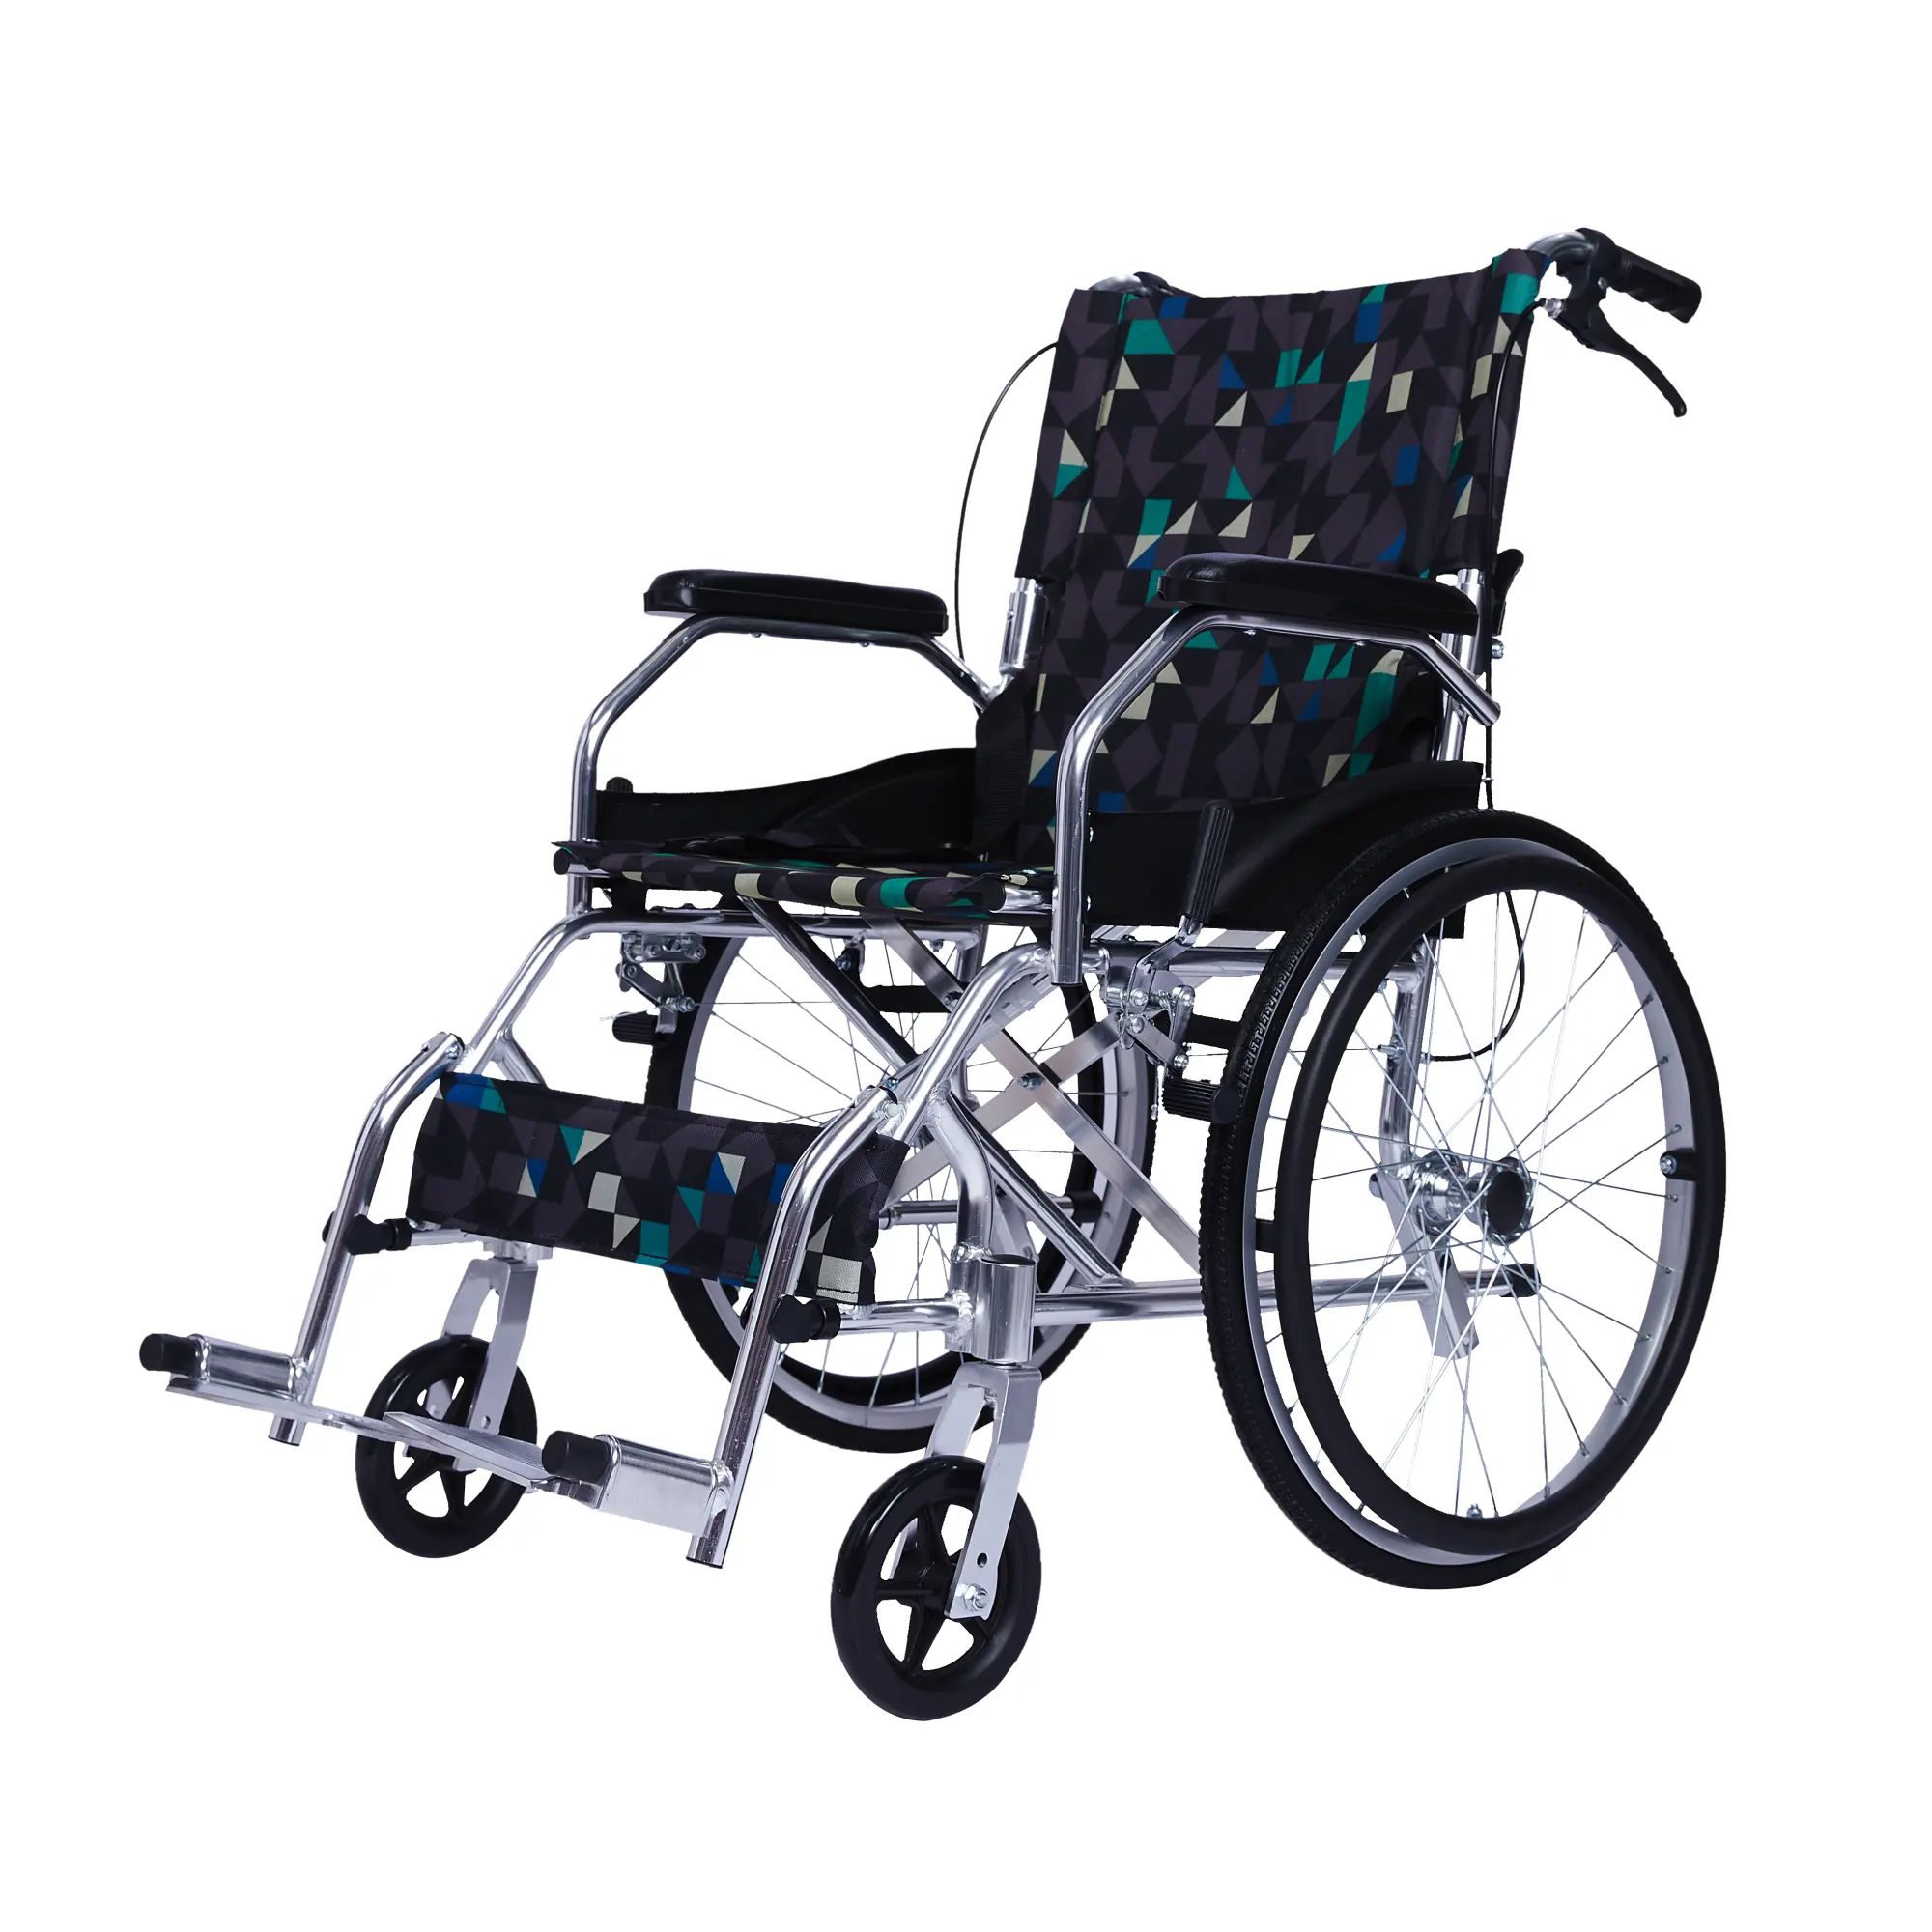 Alta qualità in alluminio leggero telaio sedia a rotelle disabile bracciolo fisso Flip up legrest prezzo di fabbrica produttore all'ingrosso